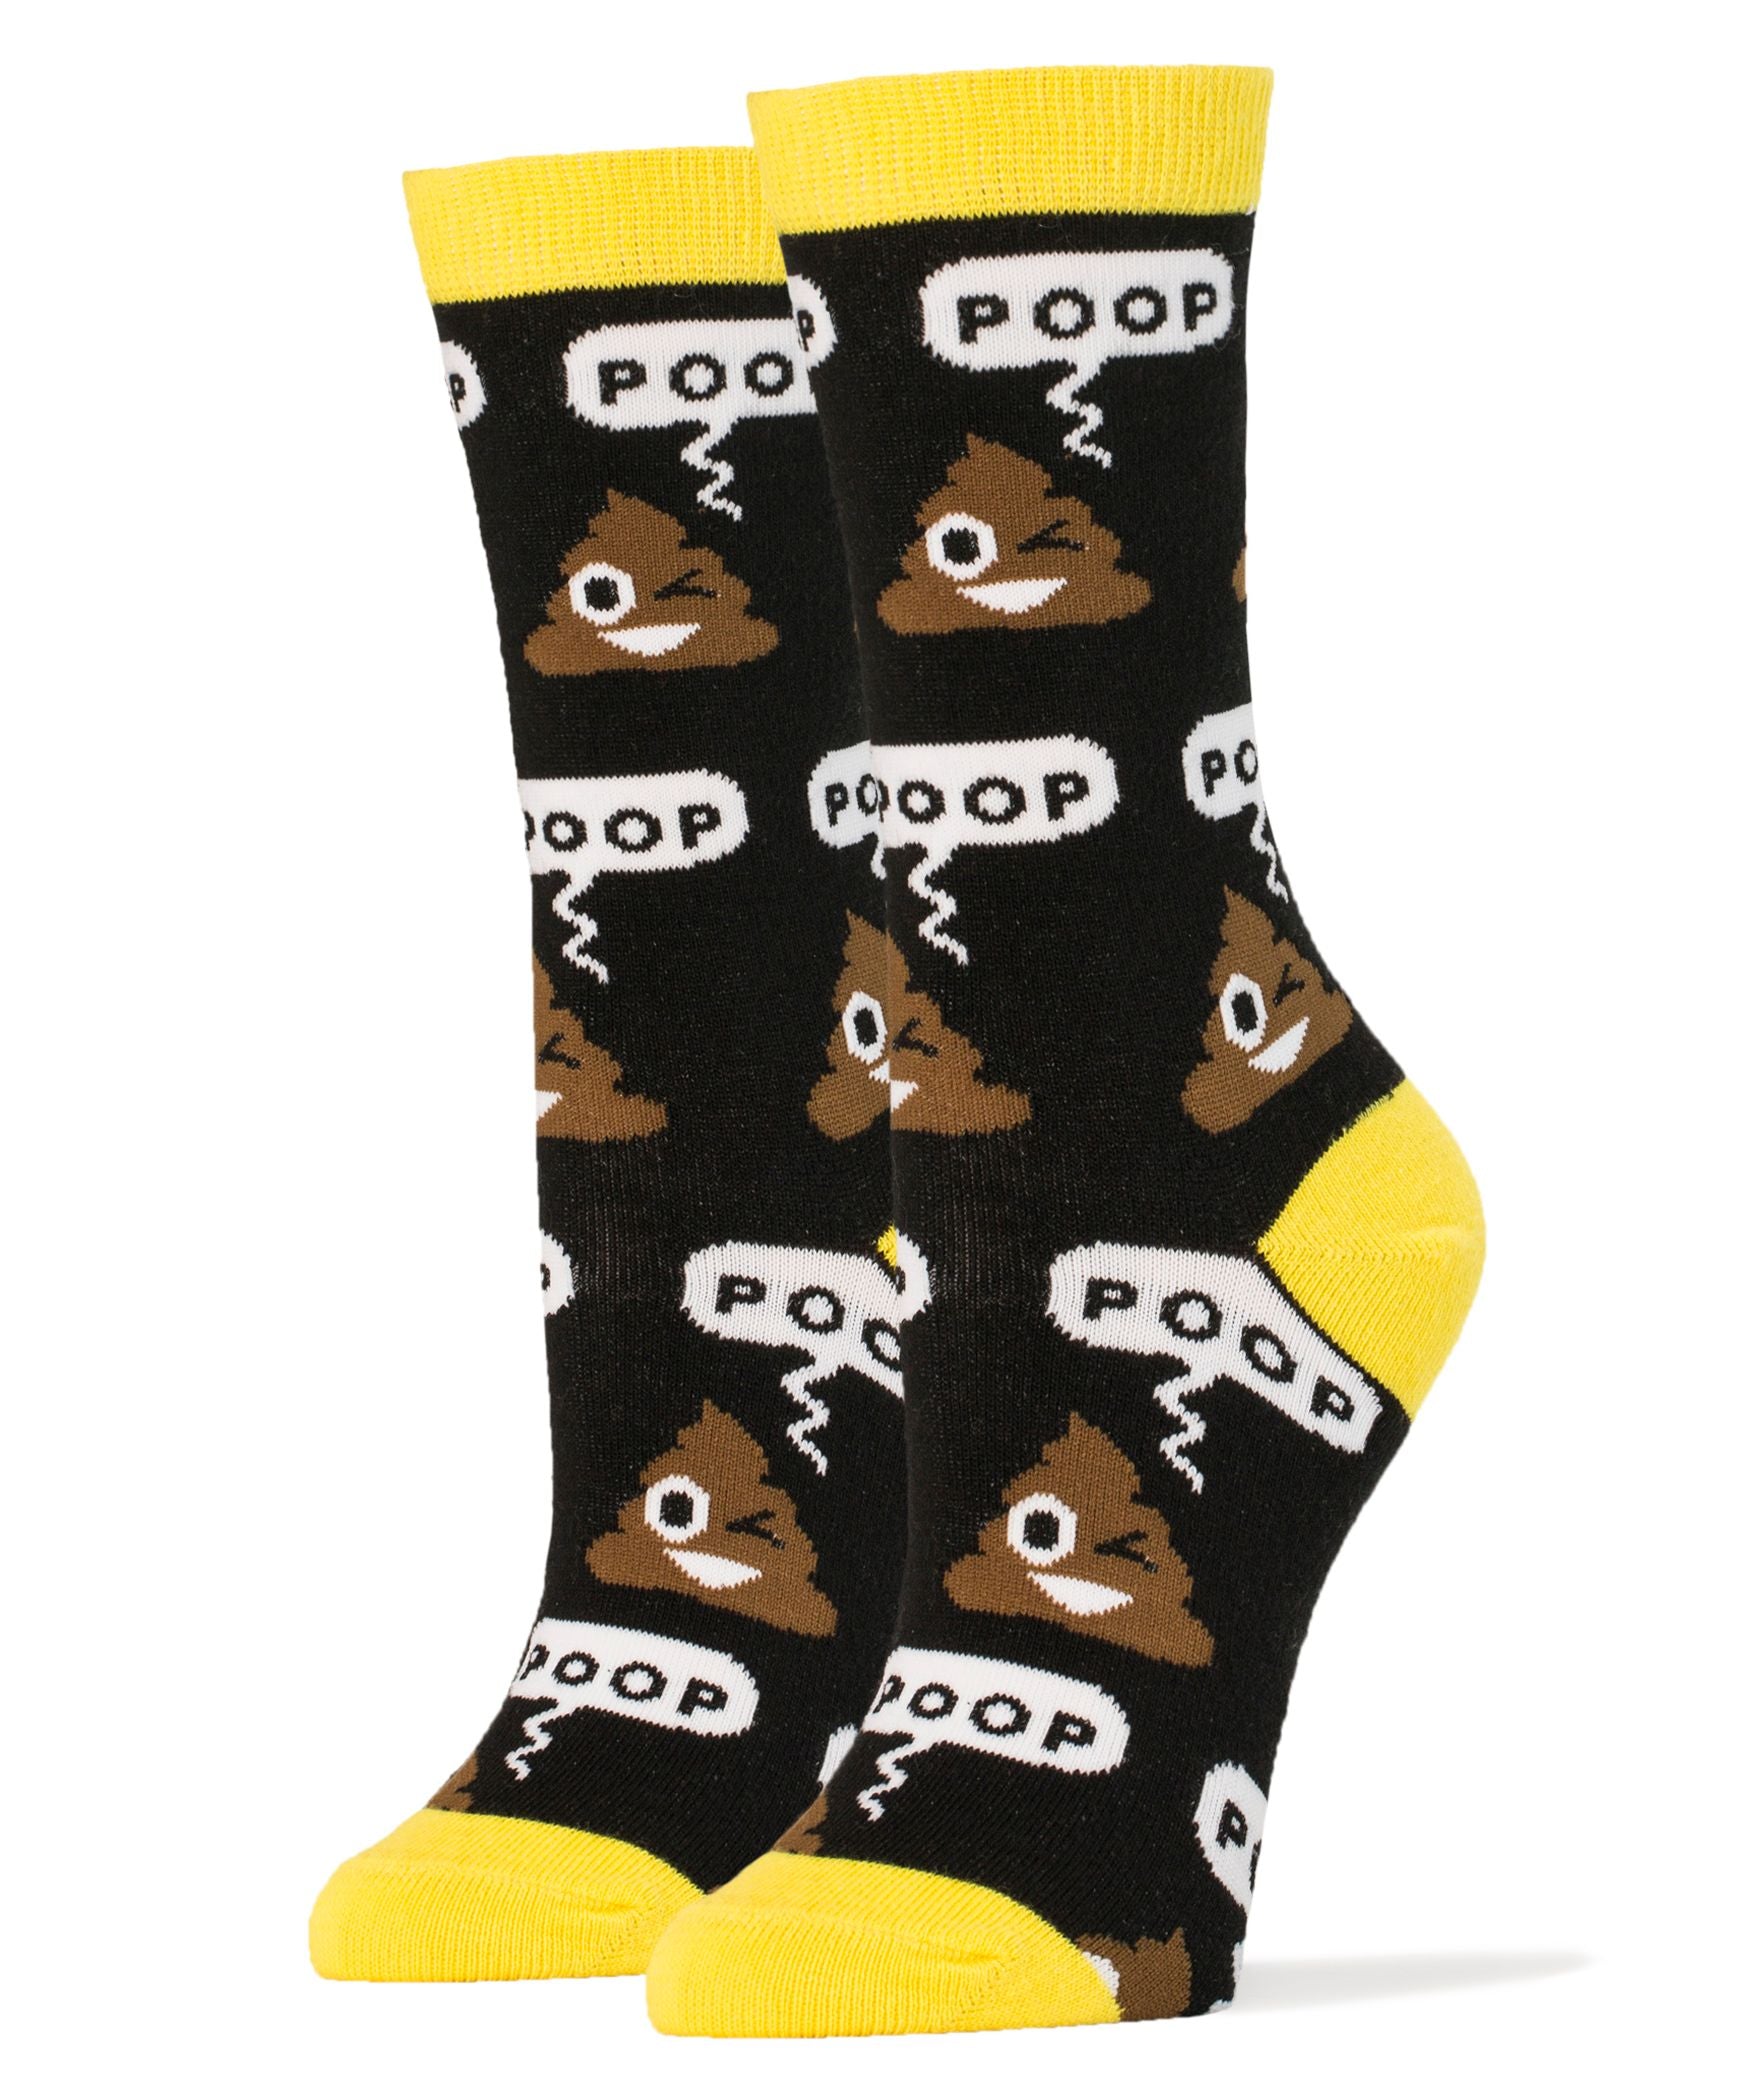 Poop! Socks